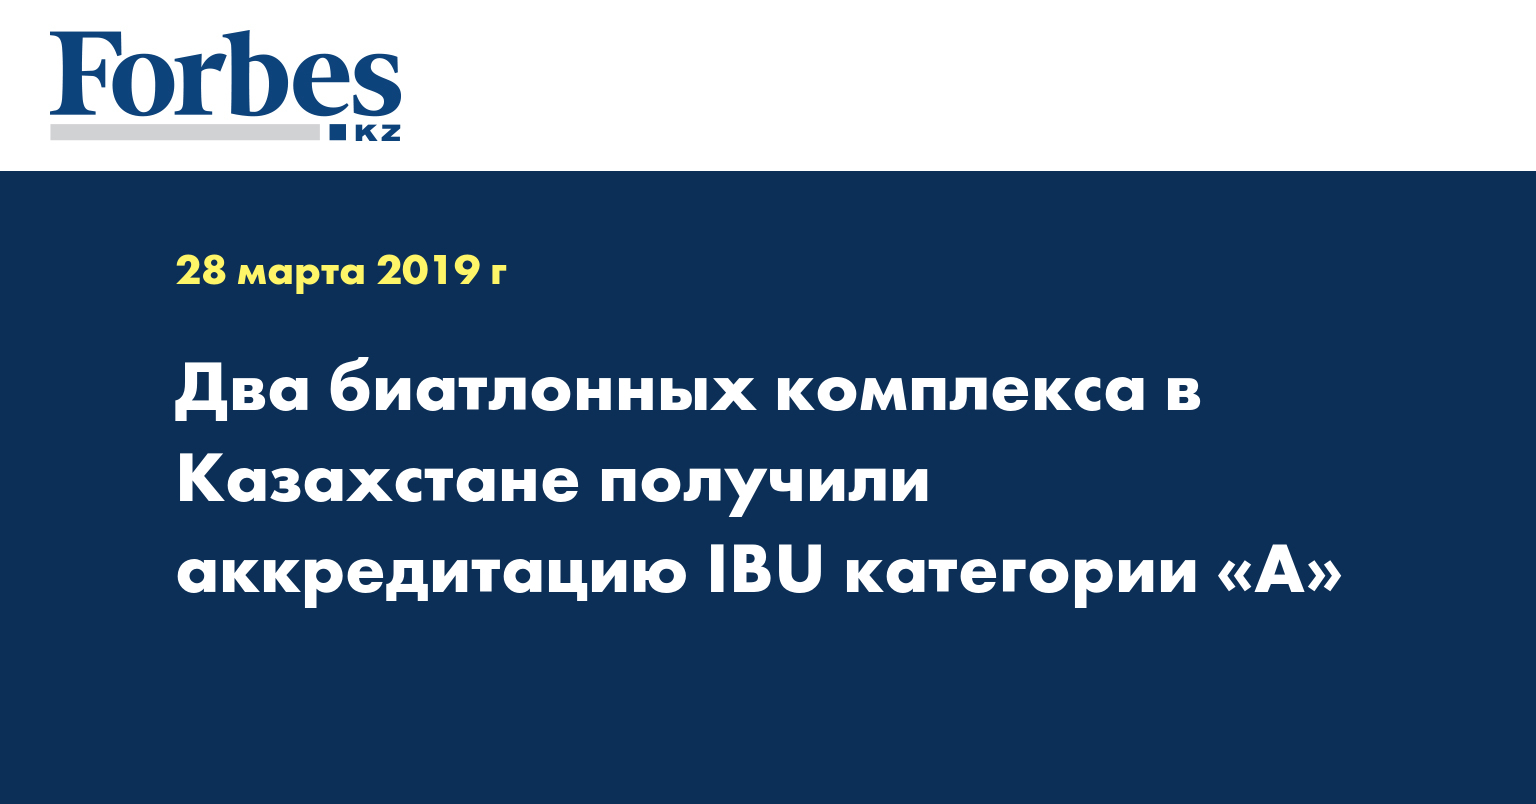 Два биатлонных комплекса в Казахстане получили аккредитацию IBU категории «А»